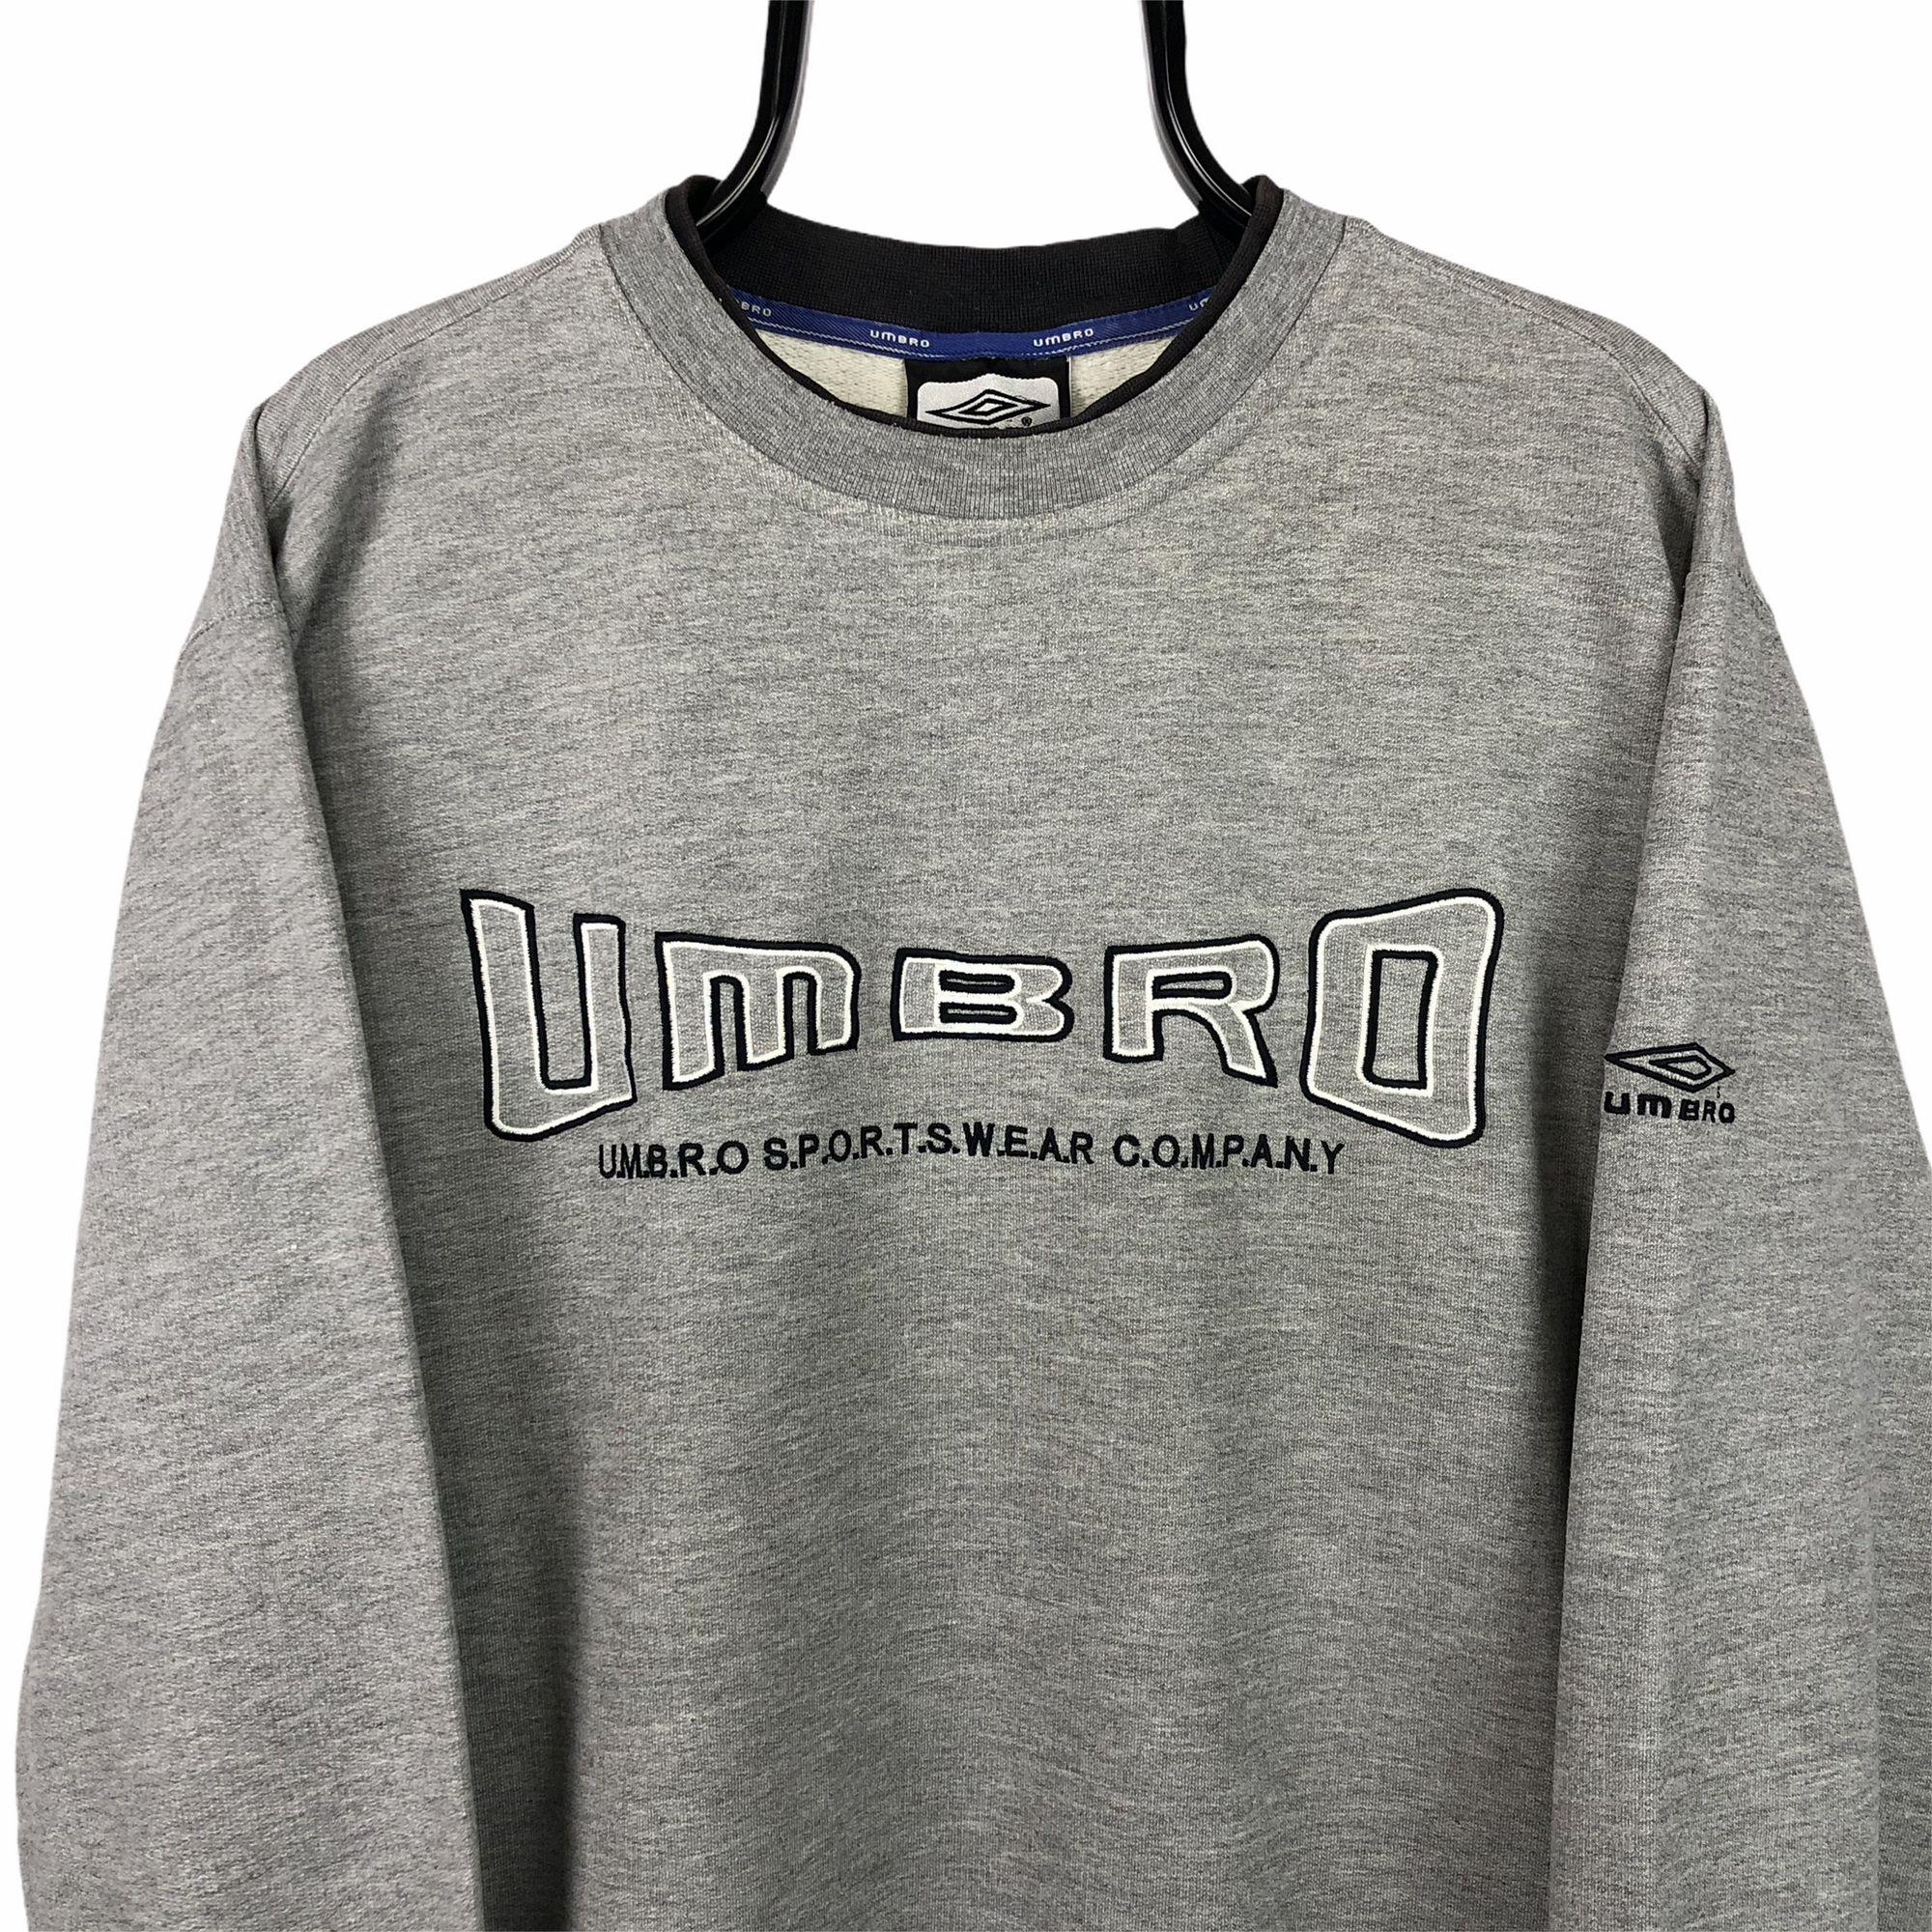 Vintage 90s Umbro Spellout Sweatshirt in Grey - Men's Large/Women's XL